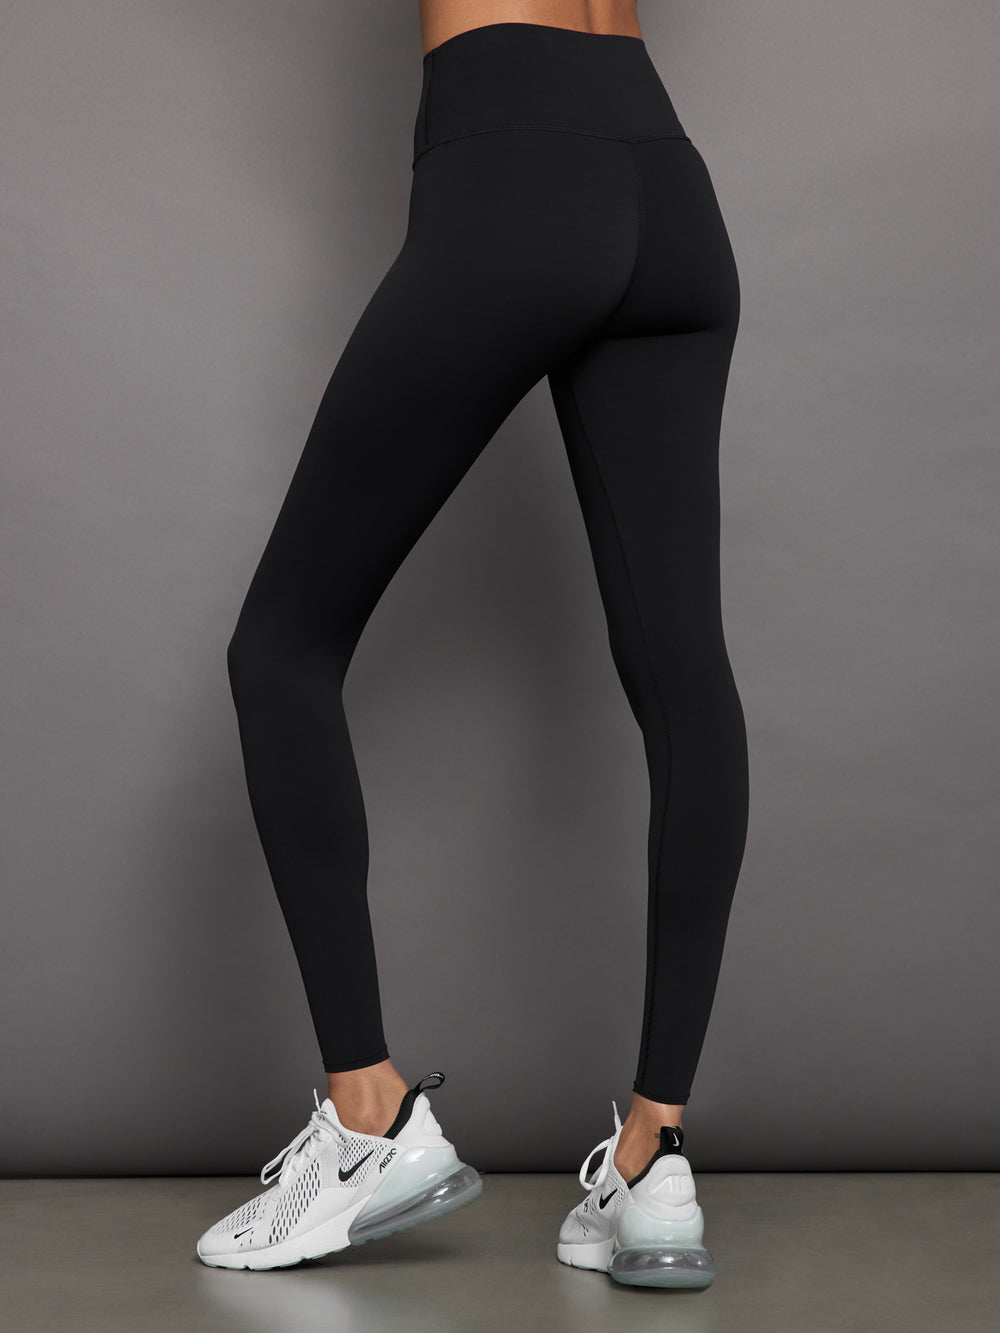 Bodybrics High Waisted Carbon Legging Black Women Leggings